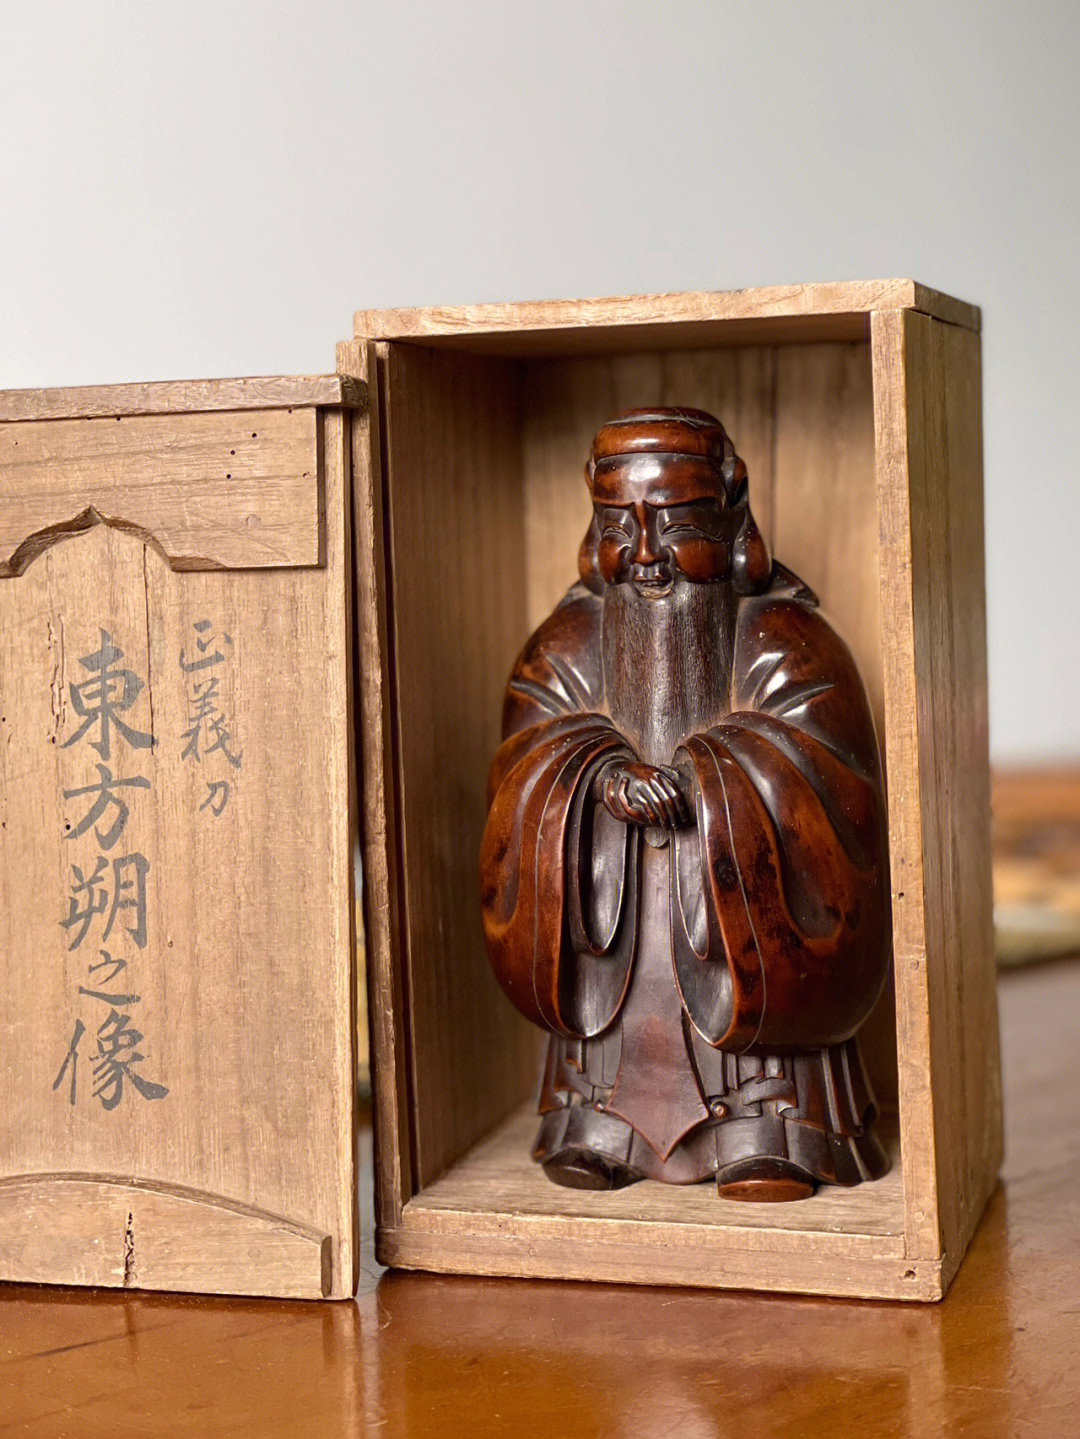 雕刻 木雕 传统文化日本古美艺术品 日本雕刻最上作家 后藤正义 作品